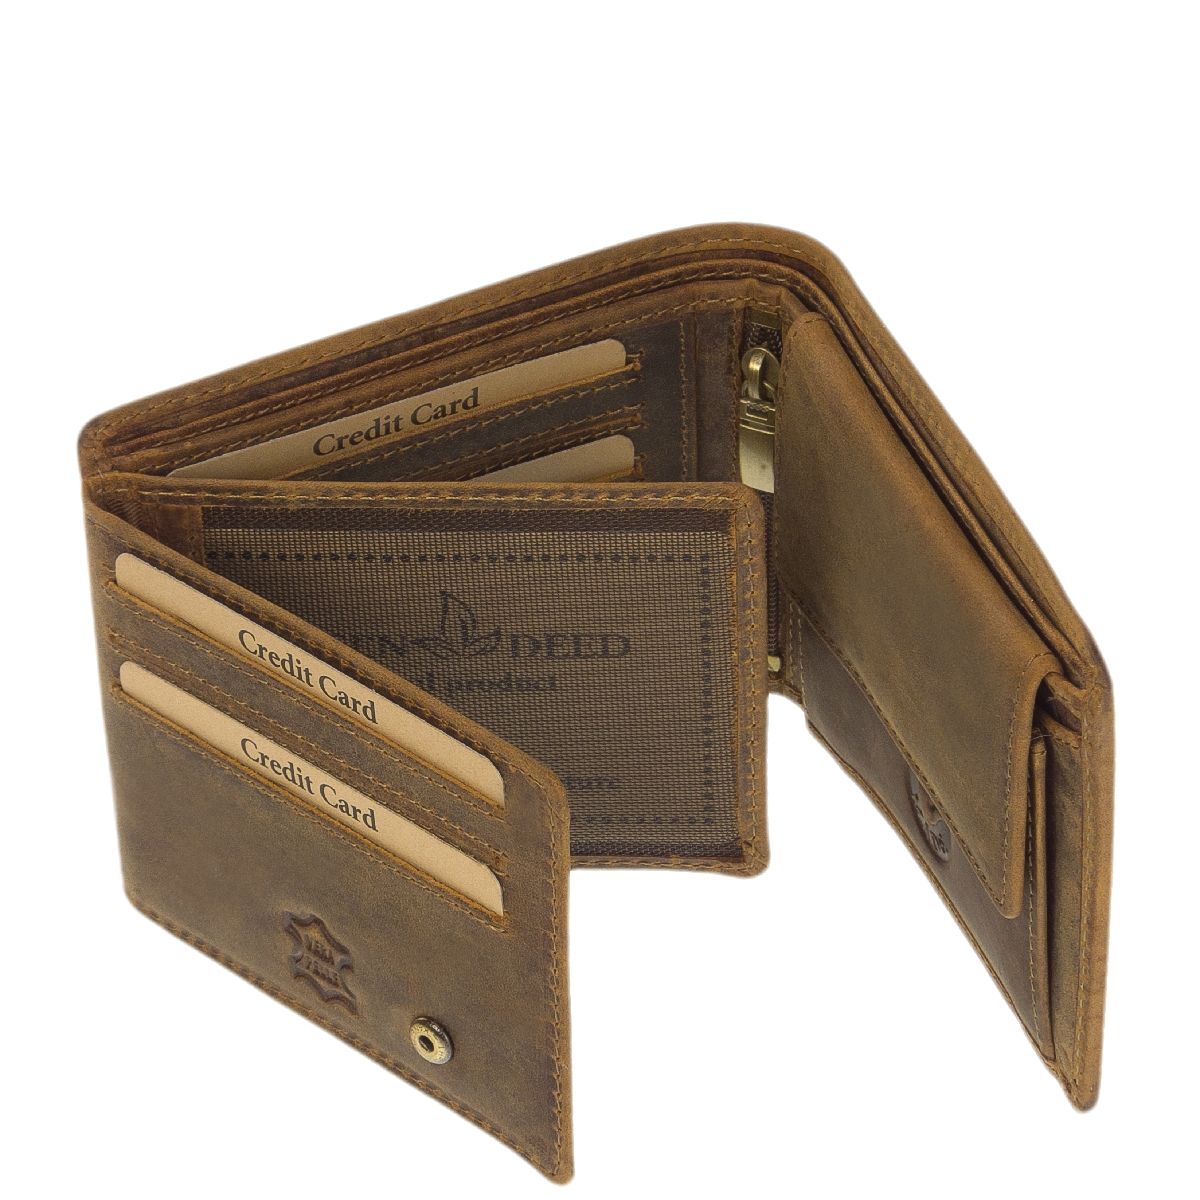 Geldbörse aus unverwüstlichem Büffelleder mit Jagdmotiv Muffelwidder. Das perfekte Geschenk für Jäger